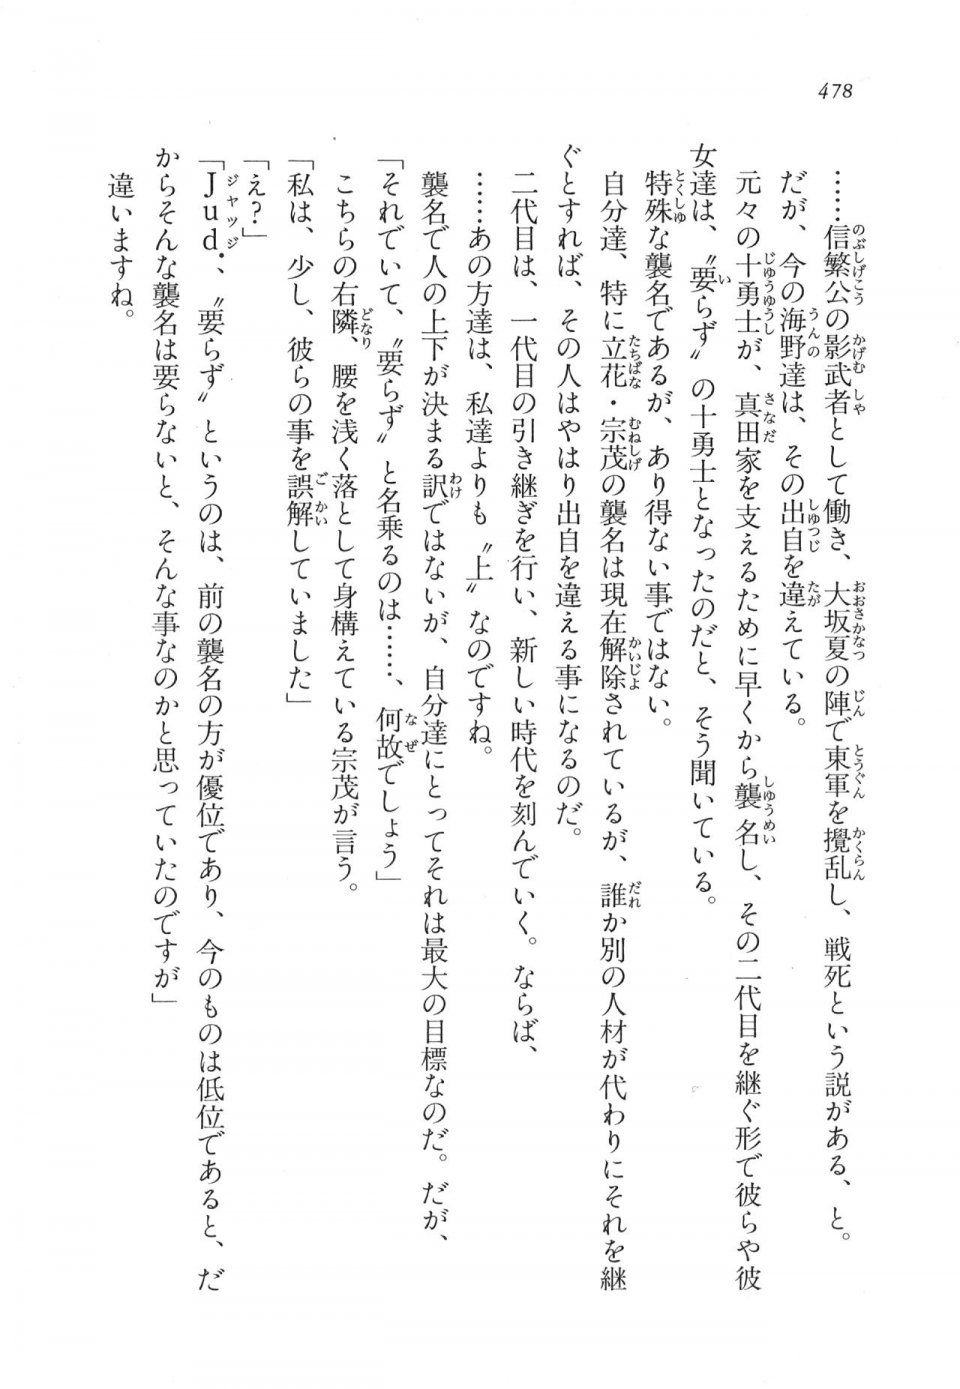 Kyoukai Senjou no Horizon LN Vol 11(5A) - Photo #478